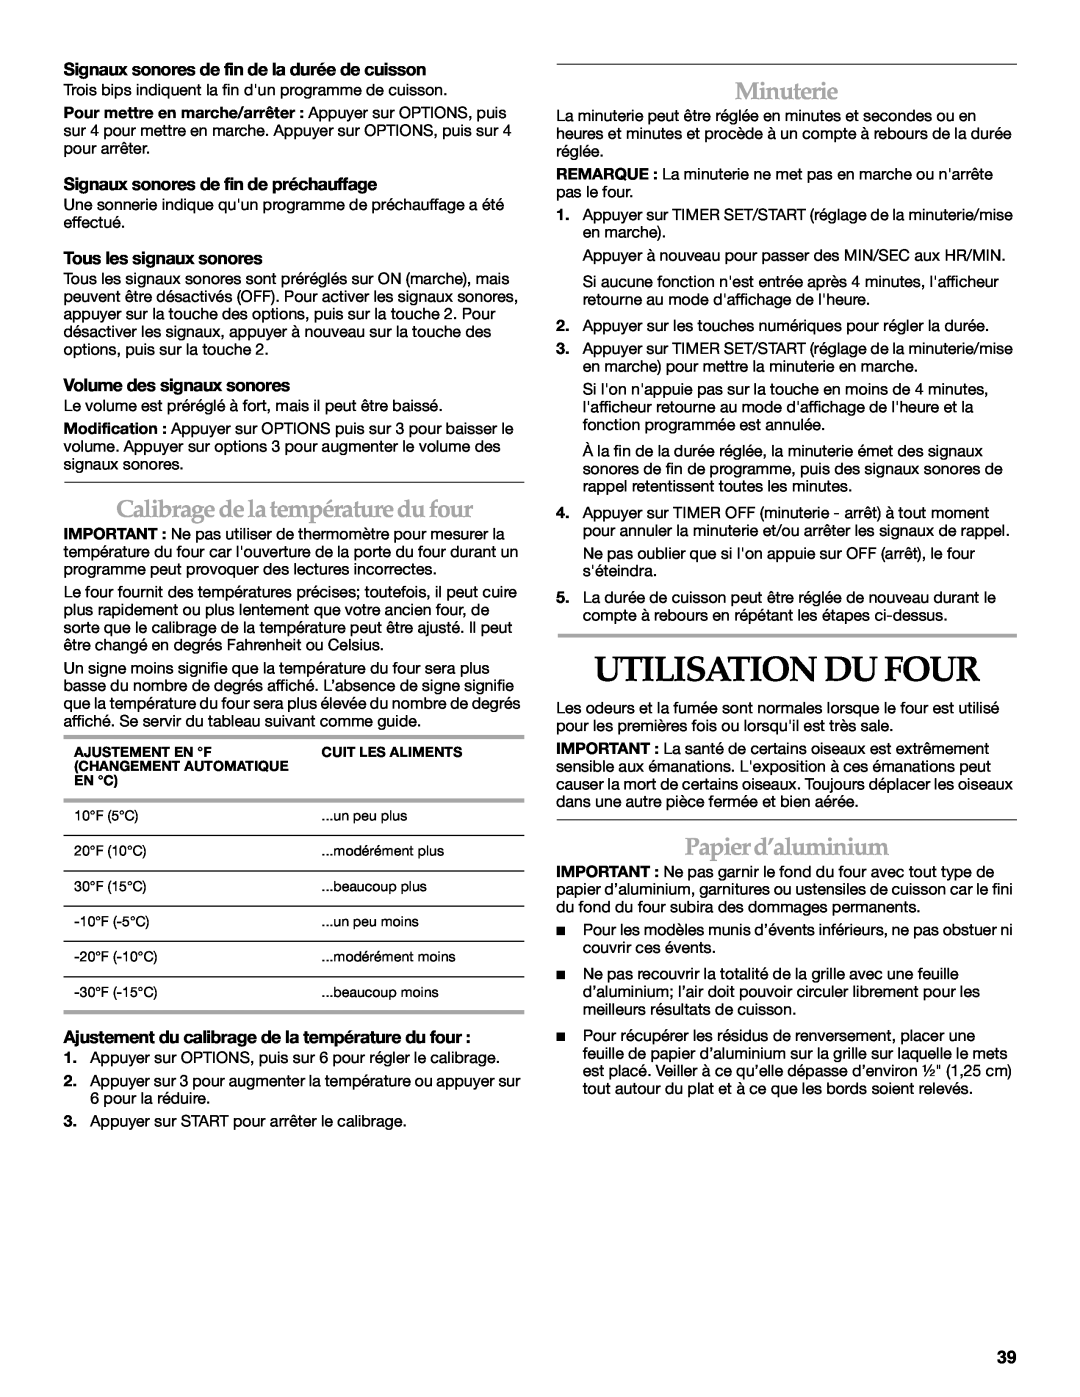 KitchenAid KGRI801 manual Utilisation Du Four, Calibrage de la température du four, Minuterie, Papier d’aluminium 